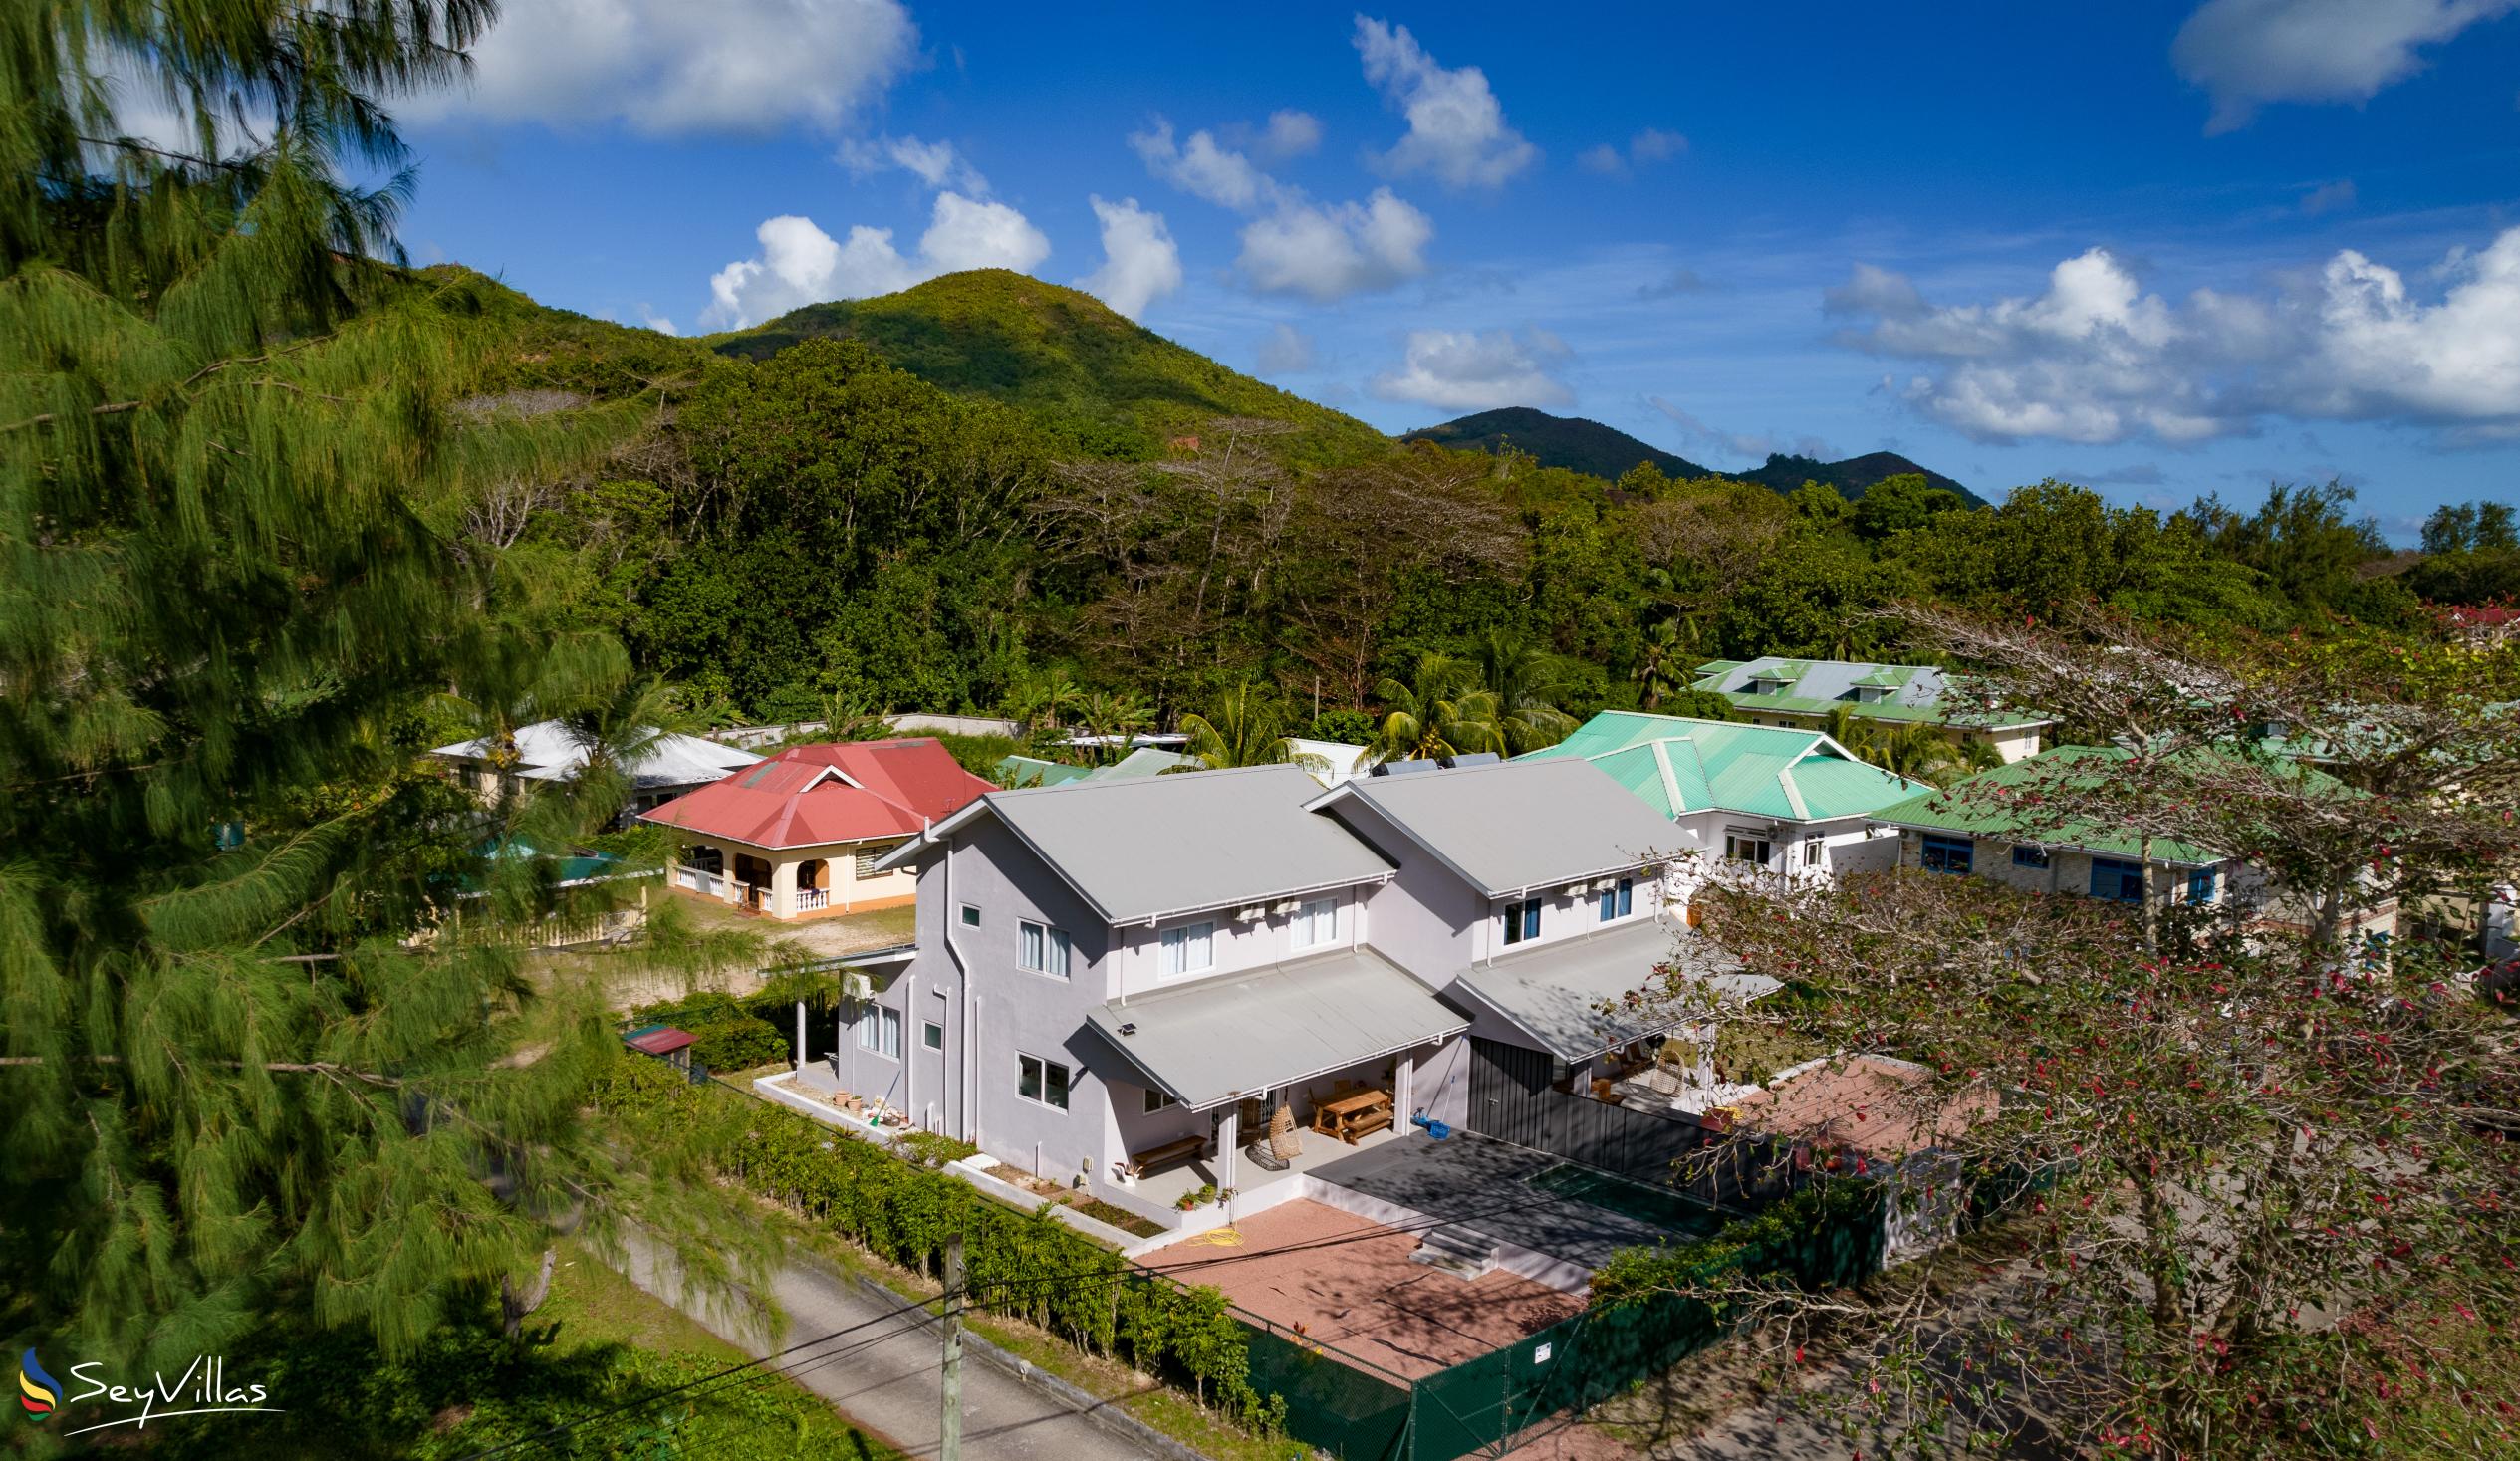 Foto 15: Maison Marie-Jeanne - Aussenbereich - Praslin (Seychellen)